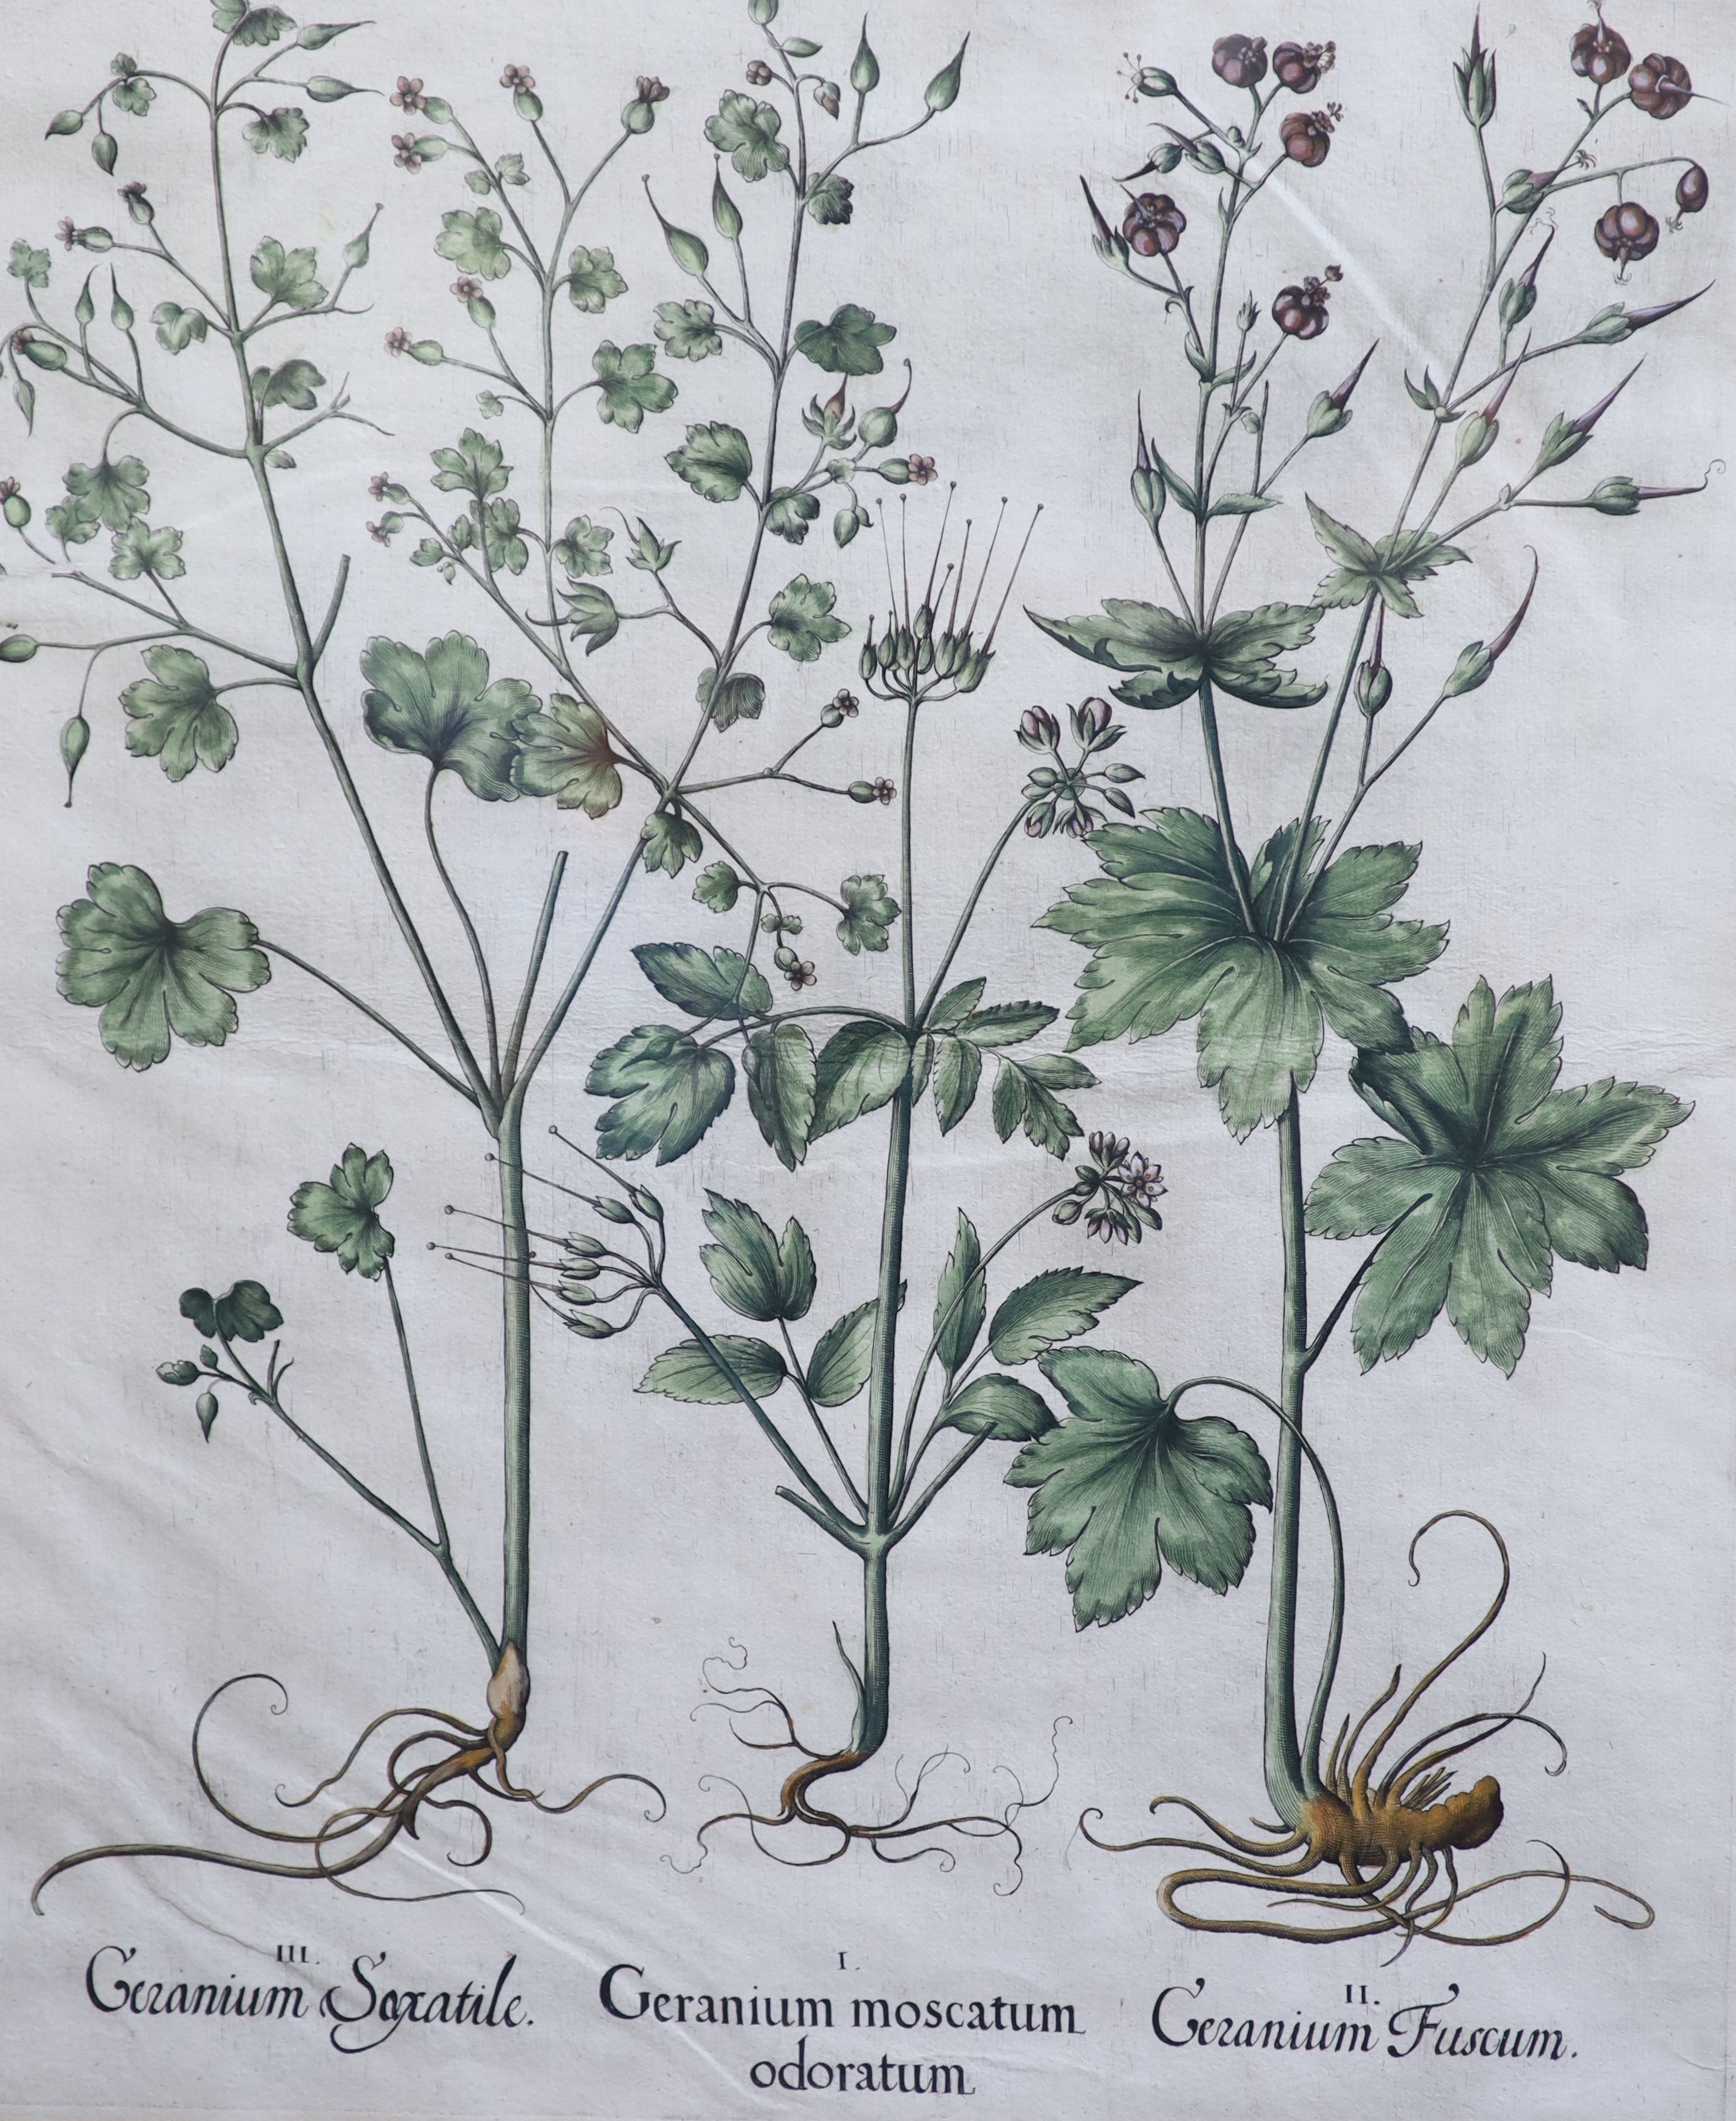 Basilius Baseler (1561-1629), Geranium Sangui narium, Geranium Muscatum in odorum, Geranium Sanguinarium maius and Geranium Muscatum odoratum from Hortus Eysettensis, four coloured engravings laid on paper, 49 x 41cm.